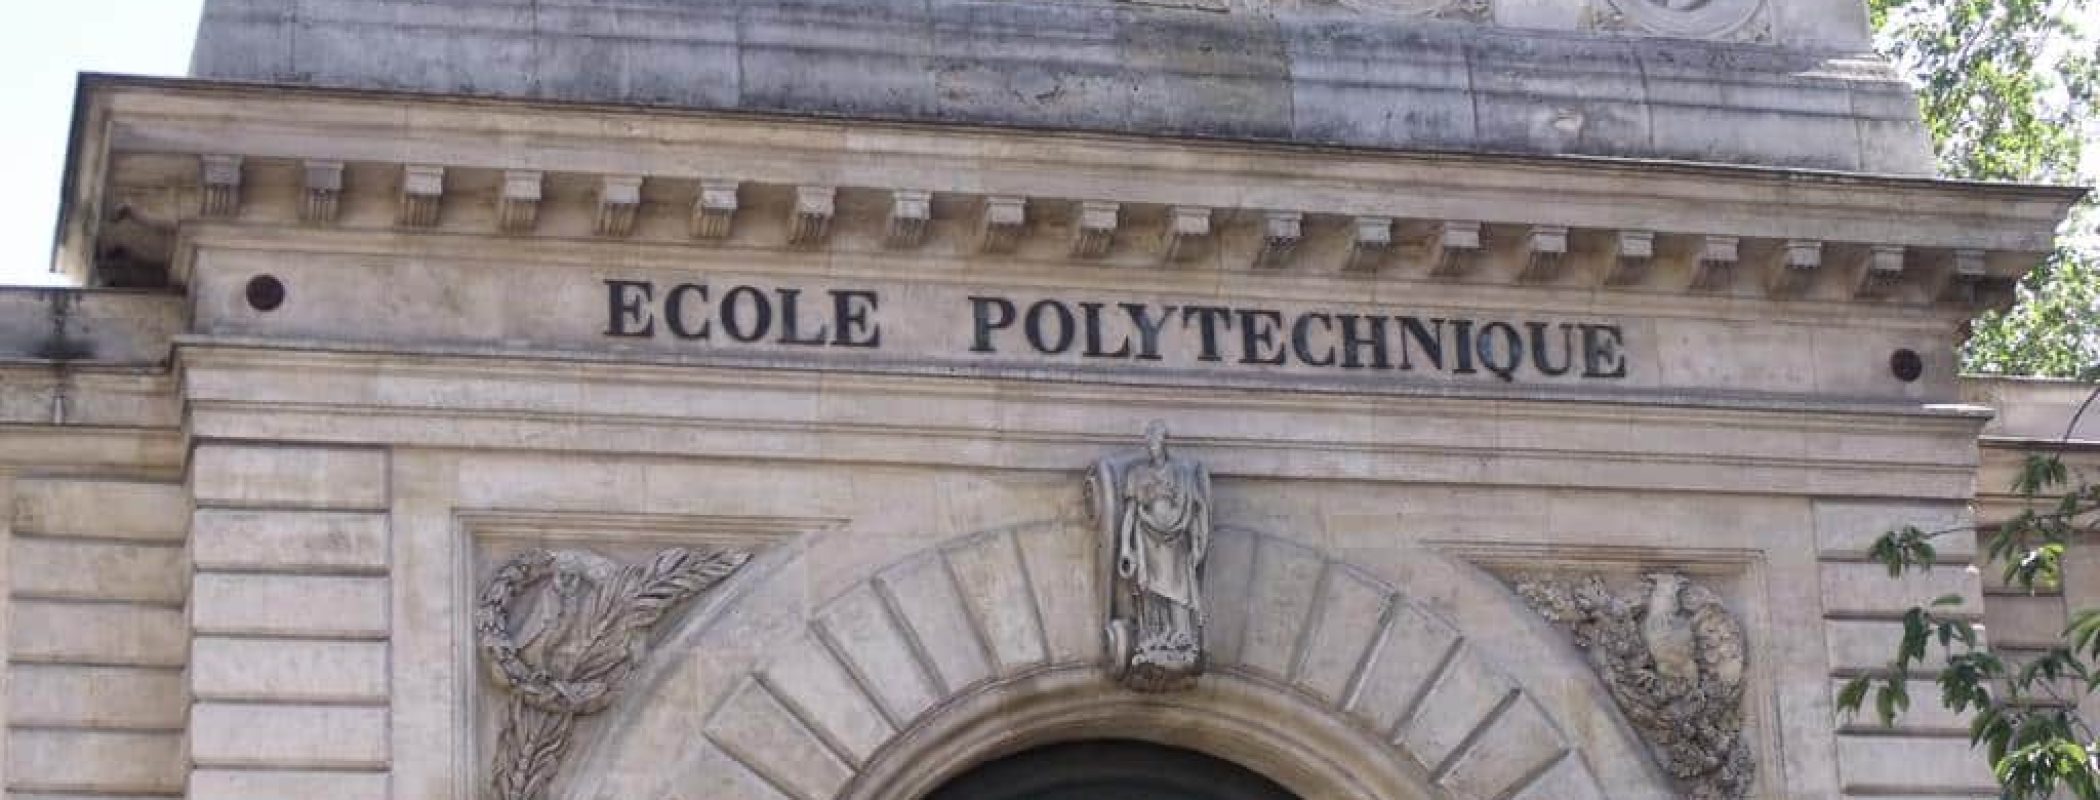 ecole-polytechnique